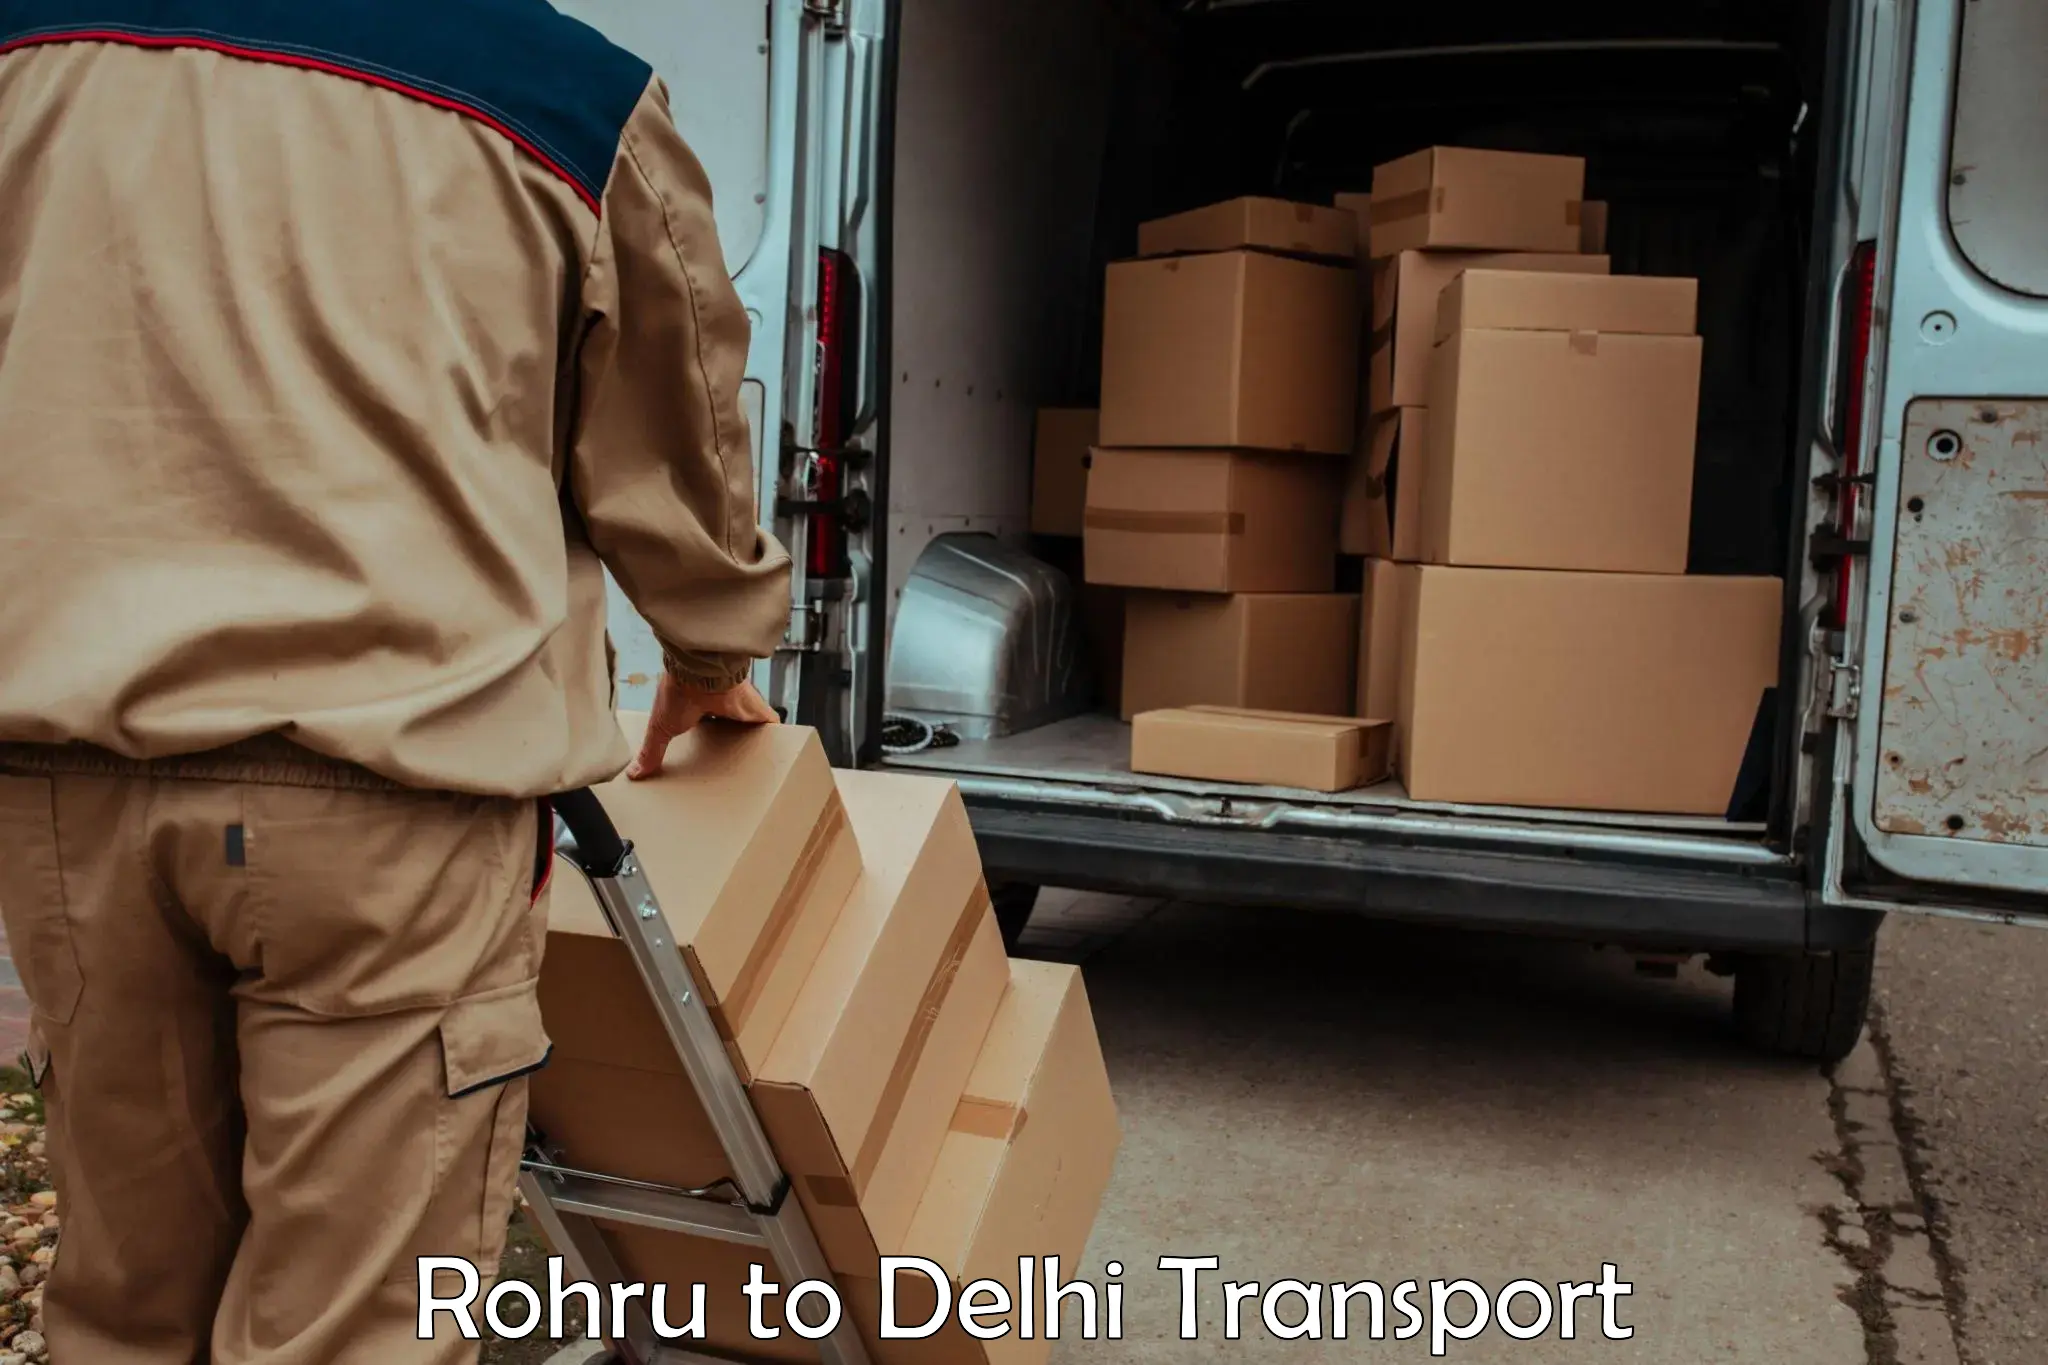 Land transport services in Rohru to IIT Delhi